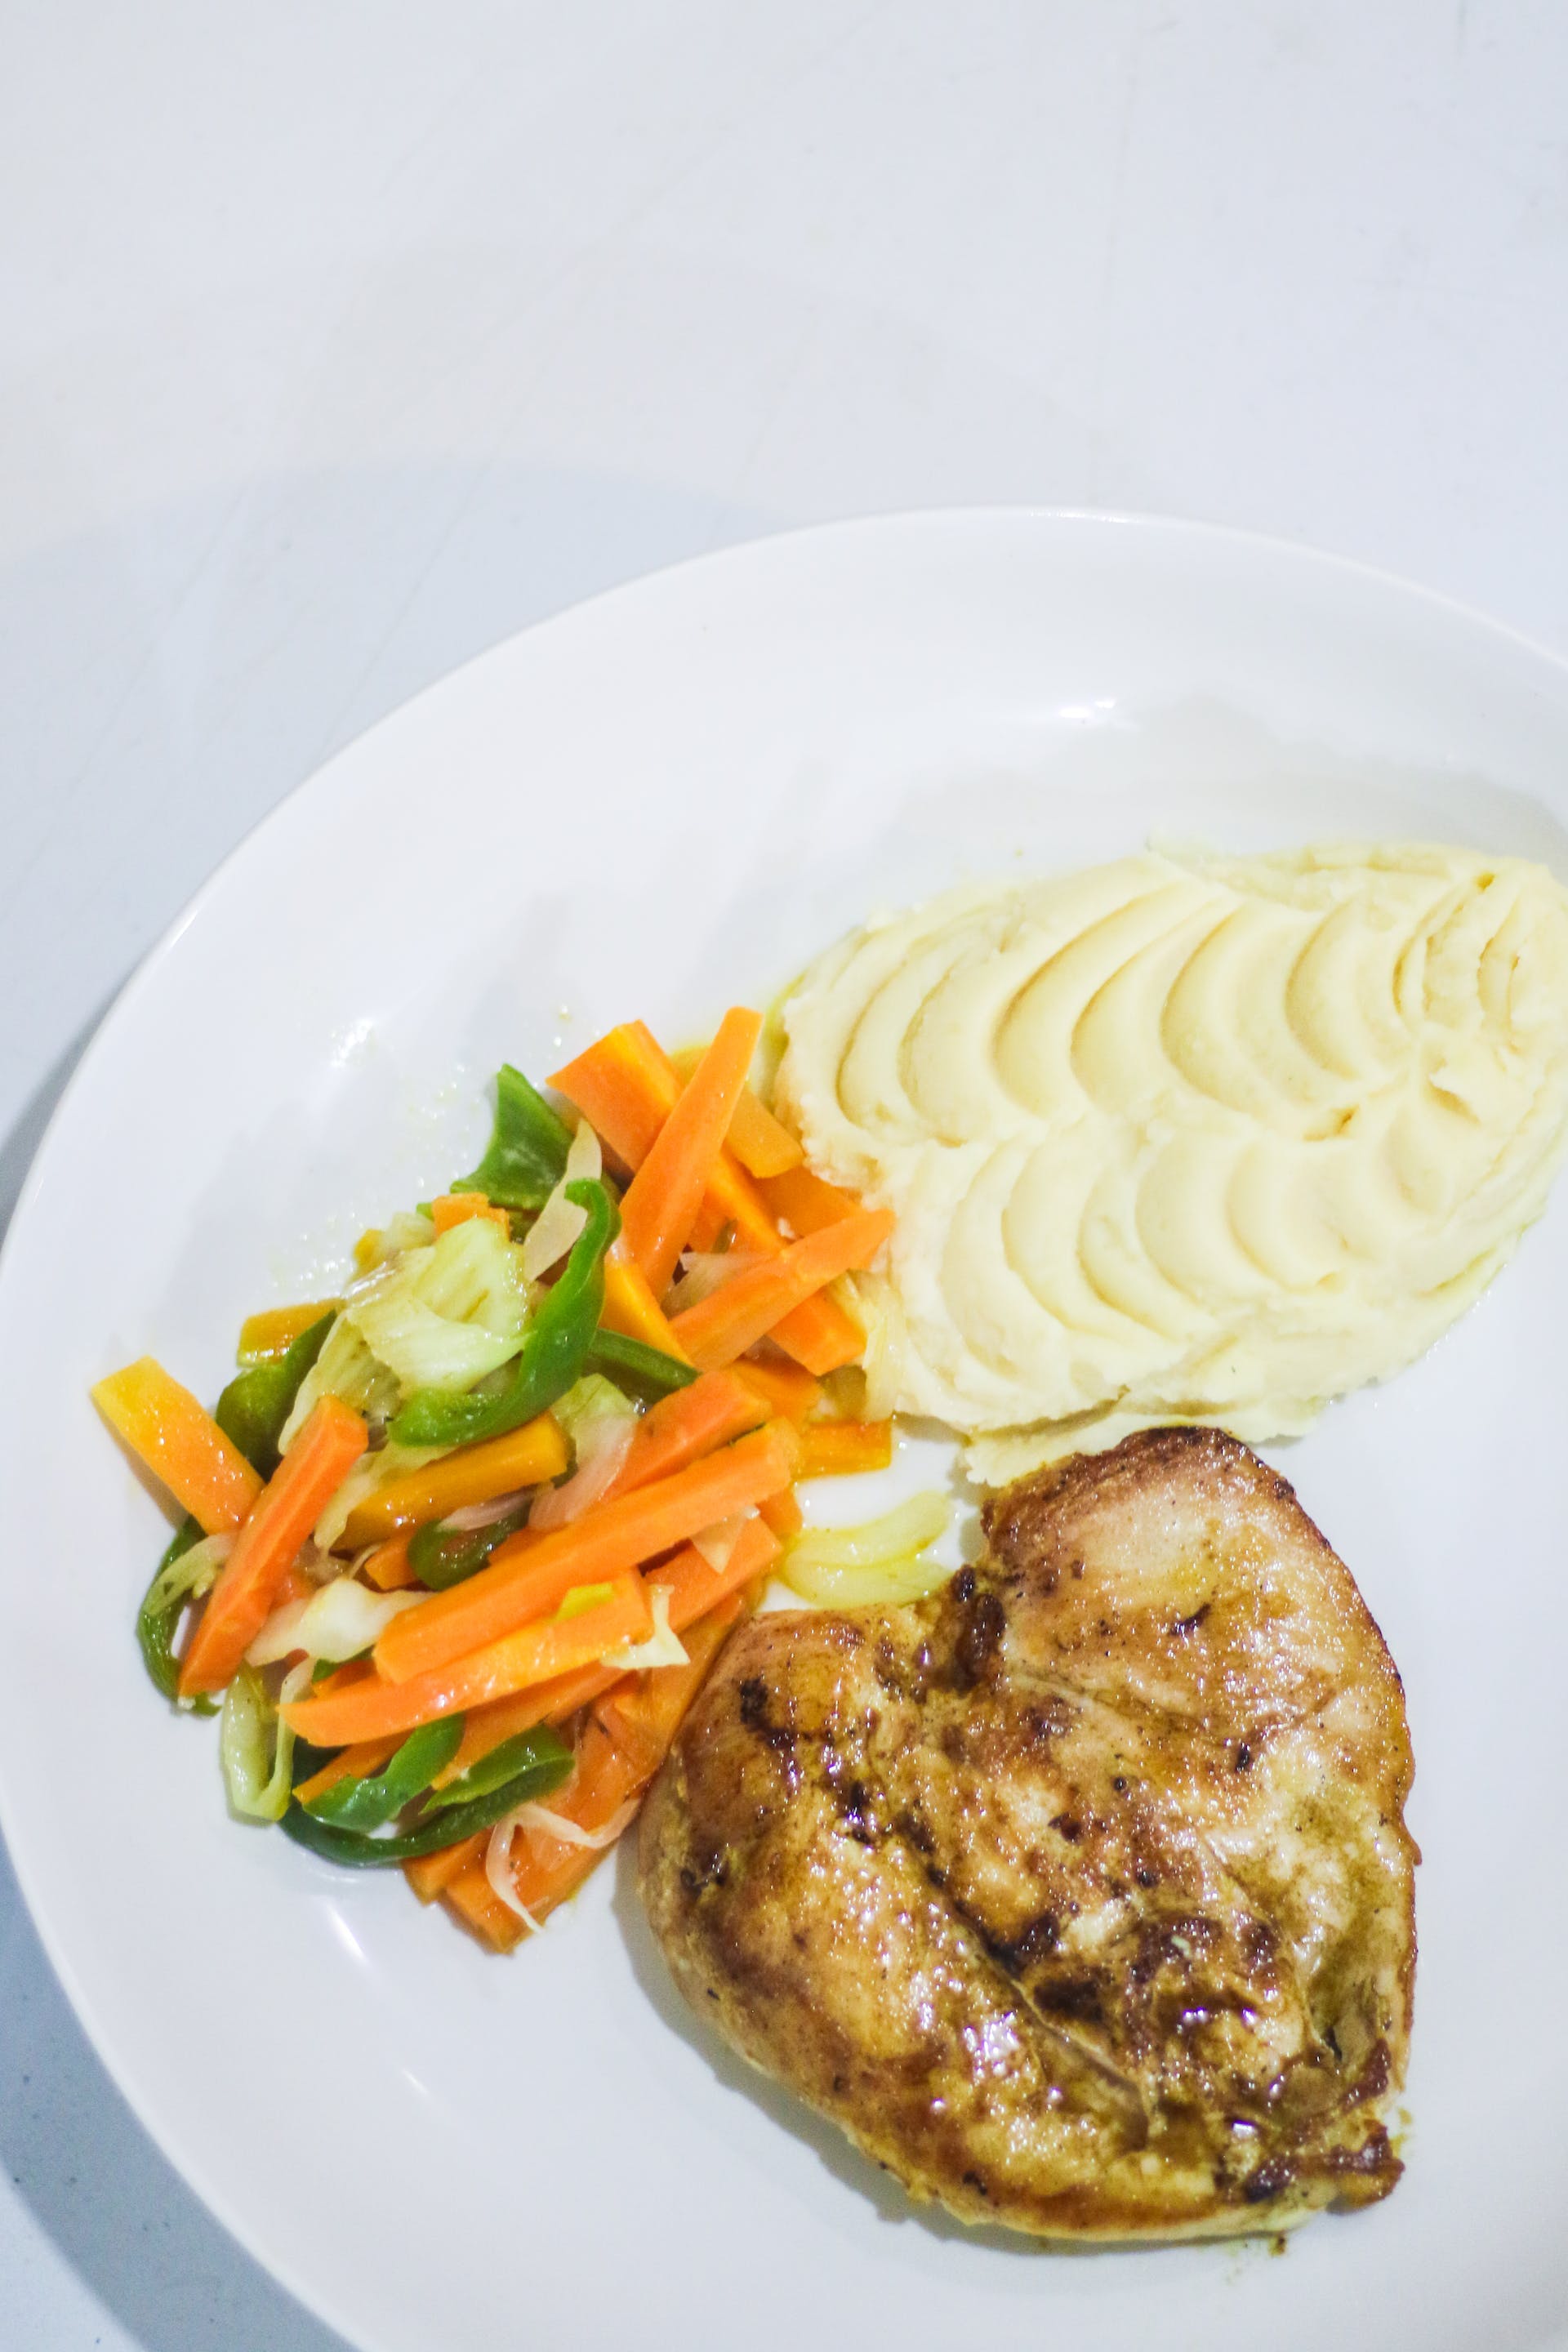 Une assiette de blanc de poulet, de légumes et de purée de pommes de terre | Source : Pexels